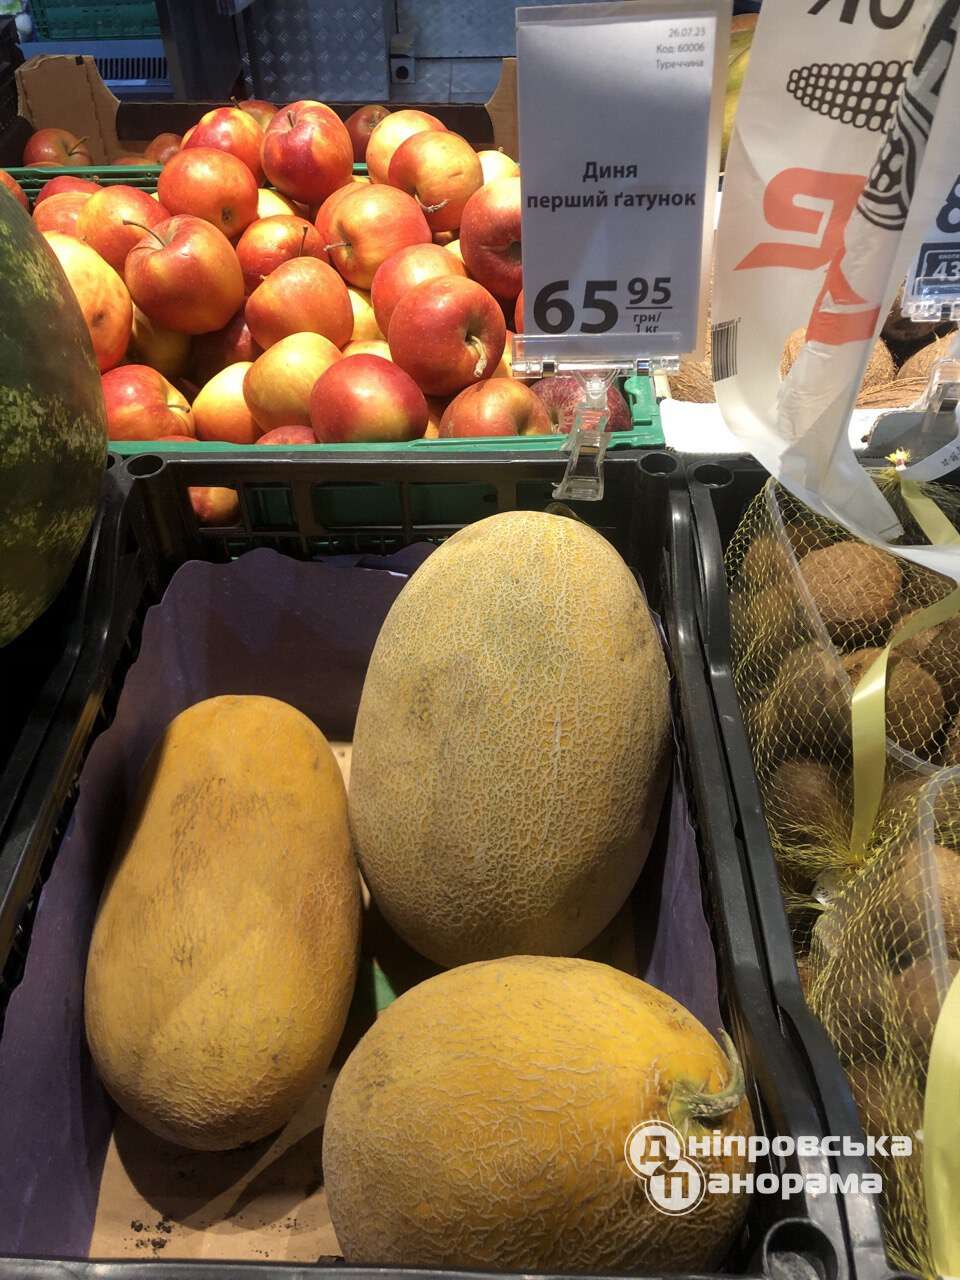 цены на фрукты Днепр